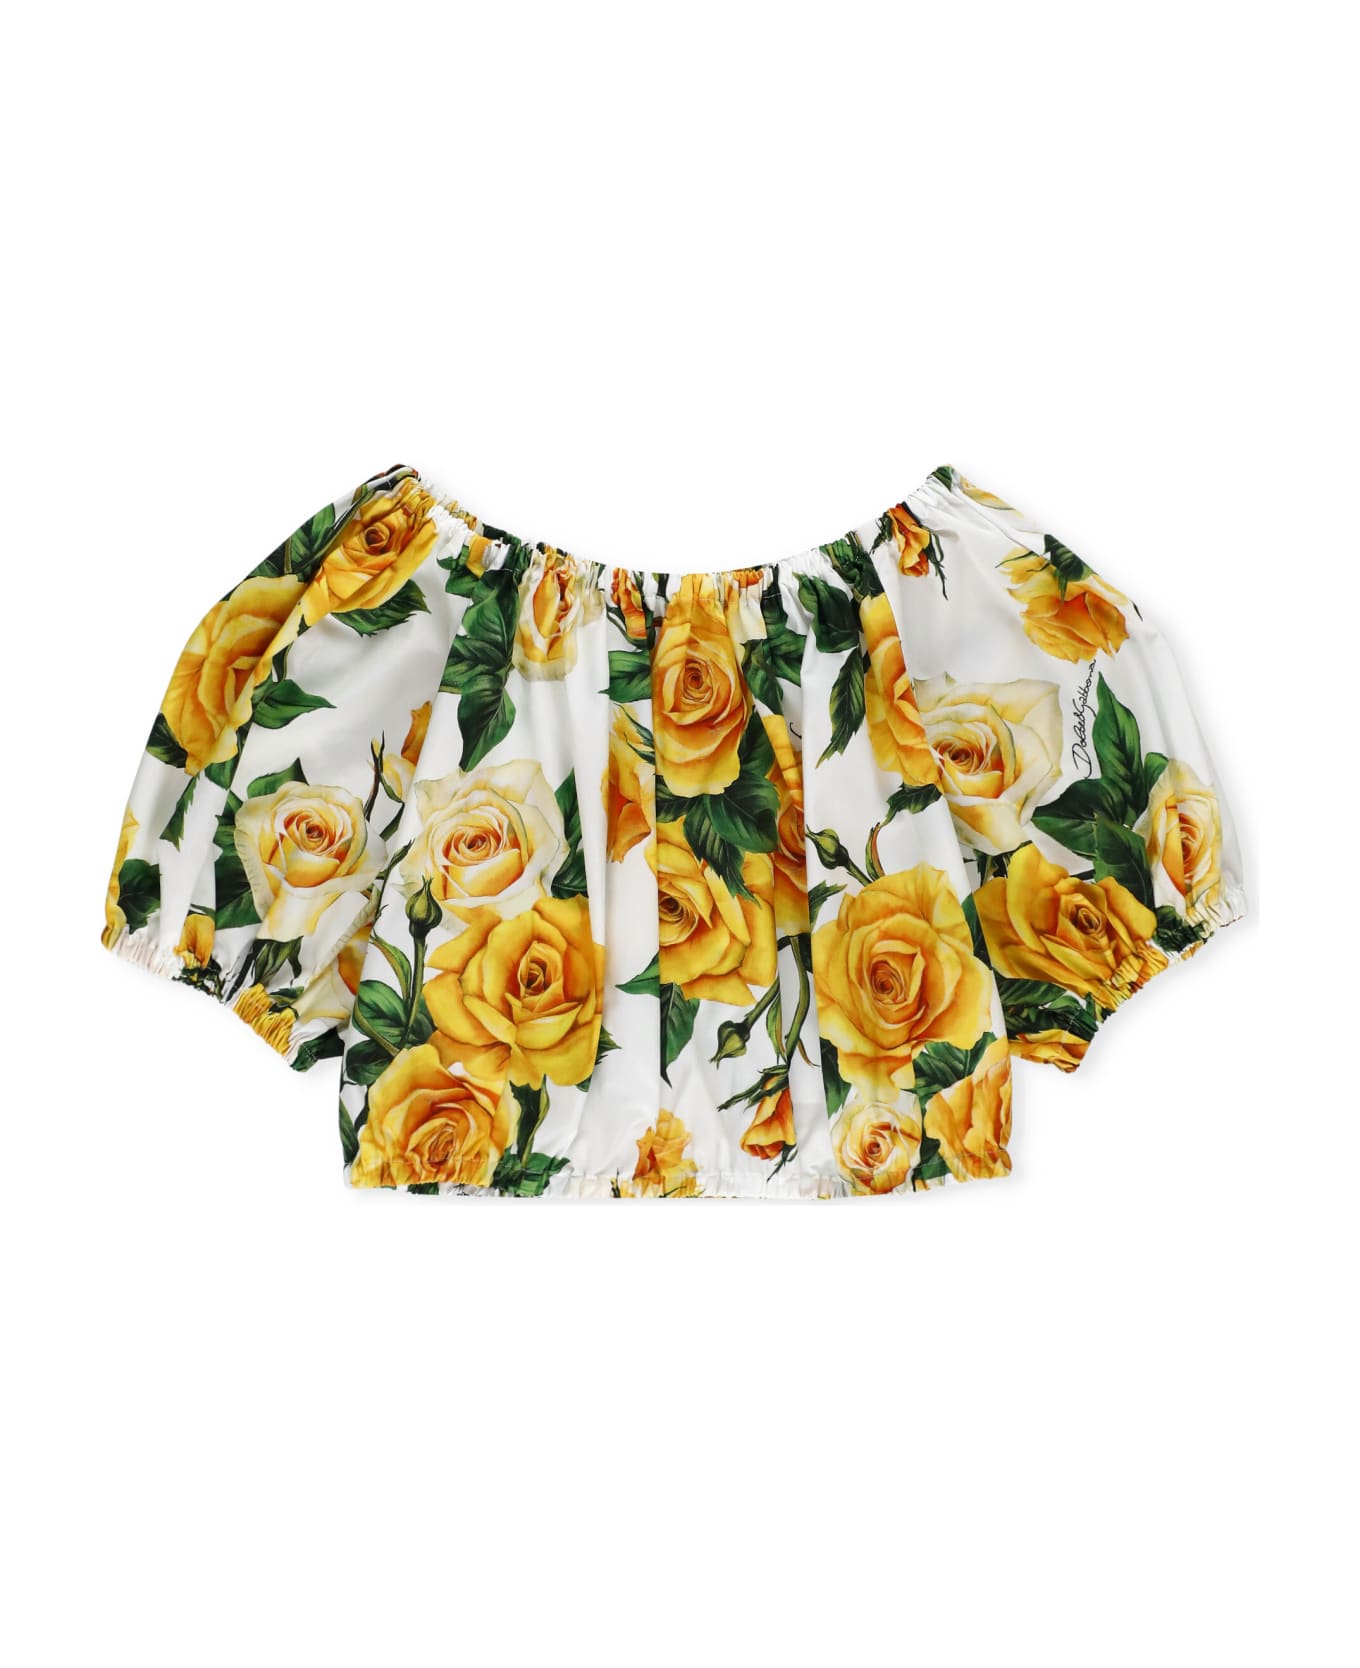 Dolce & Gabbana Flowering Blouse - Giallo シャツ